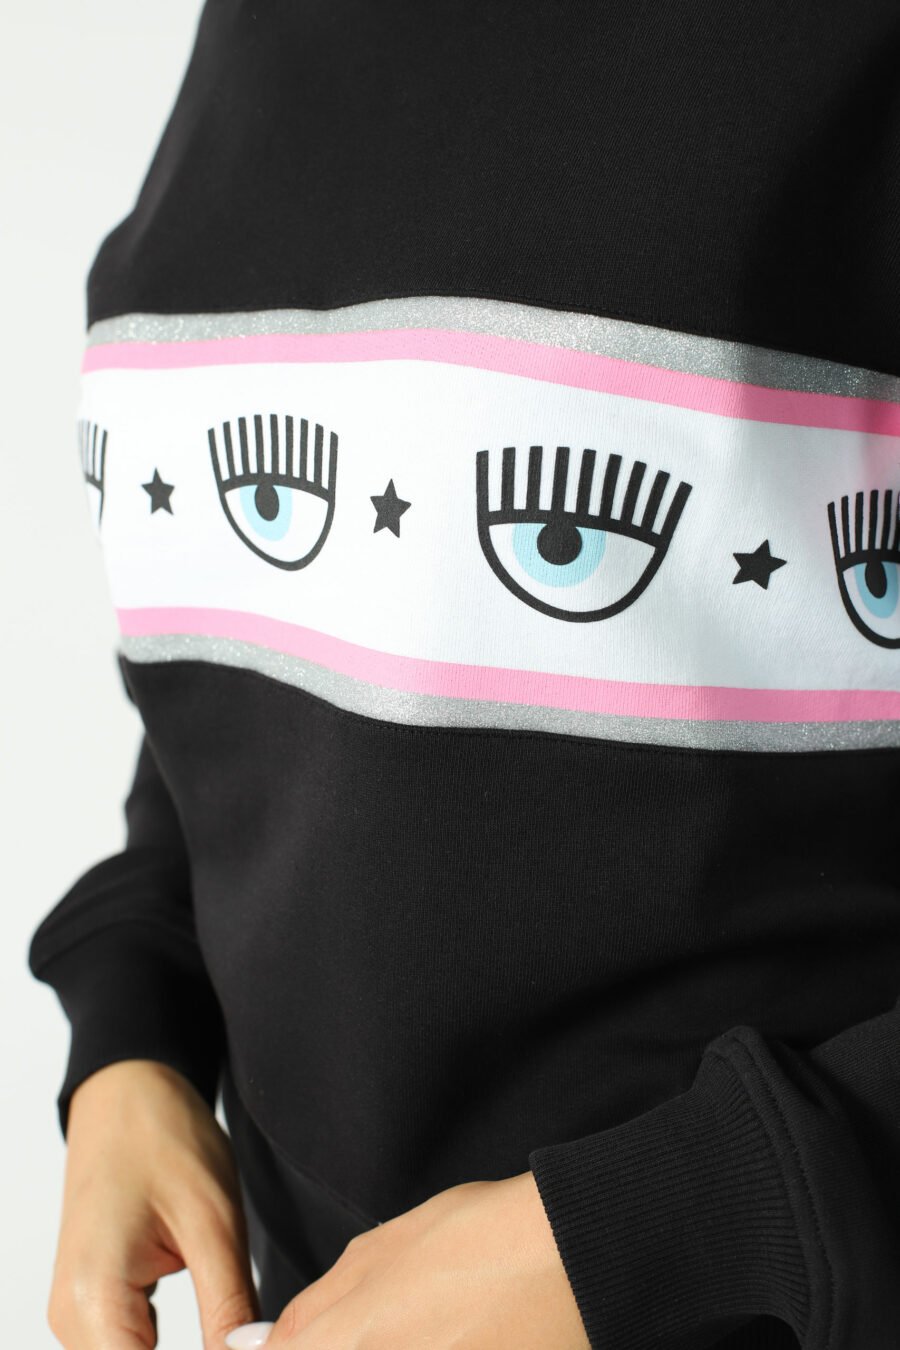 Schwarzes Sweatshirt mit Augenlogo auf Band - Fotos 2785